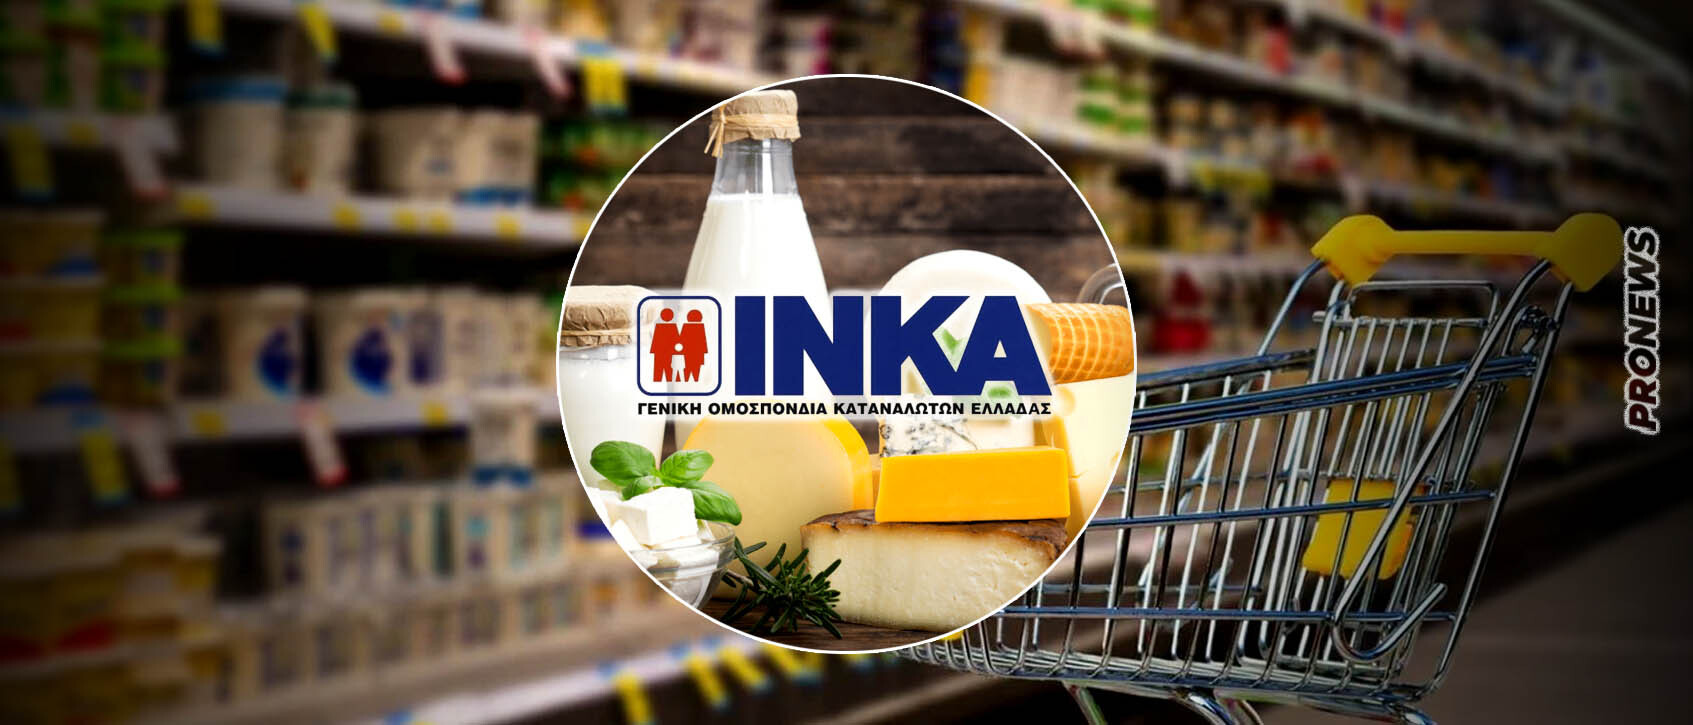 Το ΙΝΚΑ ανακοίνωσε μποϊκοτάζ σε γαλακτοκομικά και τυροκομικά  – «Δεν αγοράζουμε για μία εβδομάδα – Τέρμα η κοροϊδία»